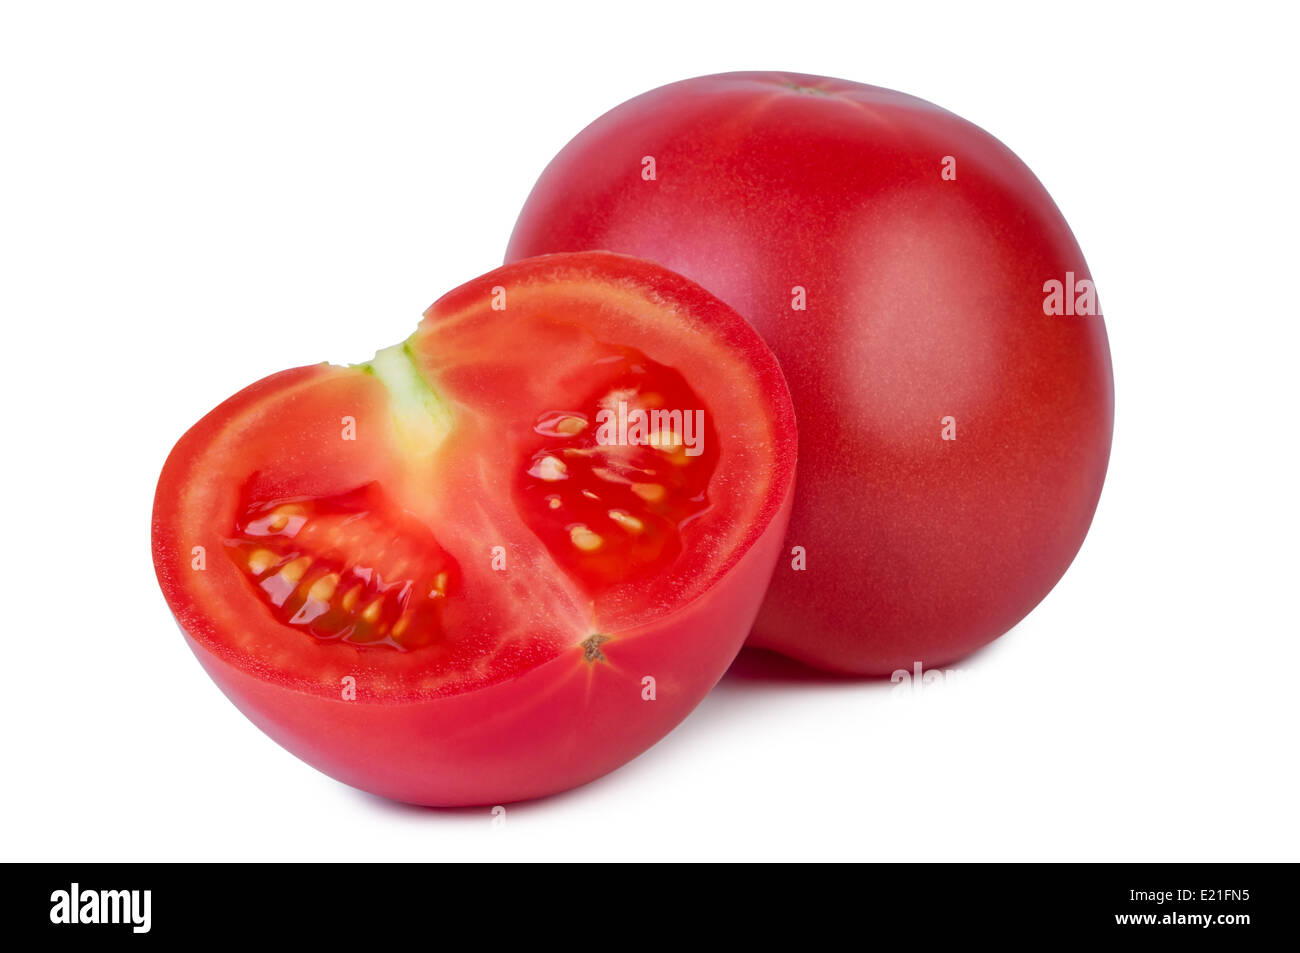 Tomato on white background. Stock Photo